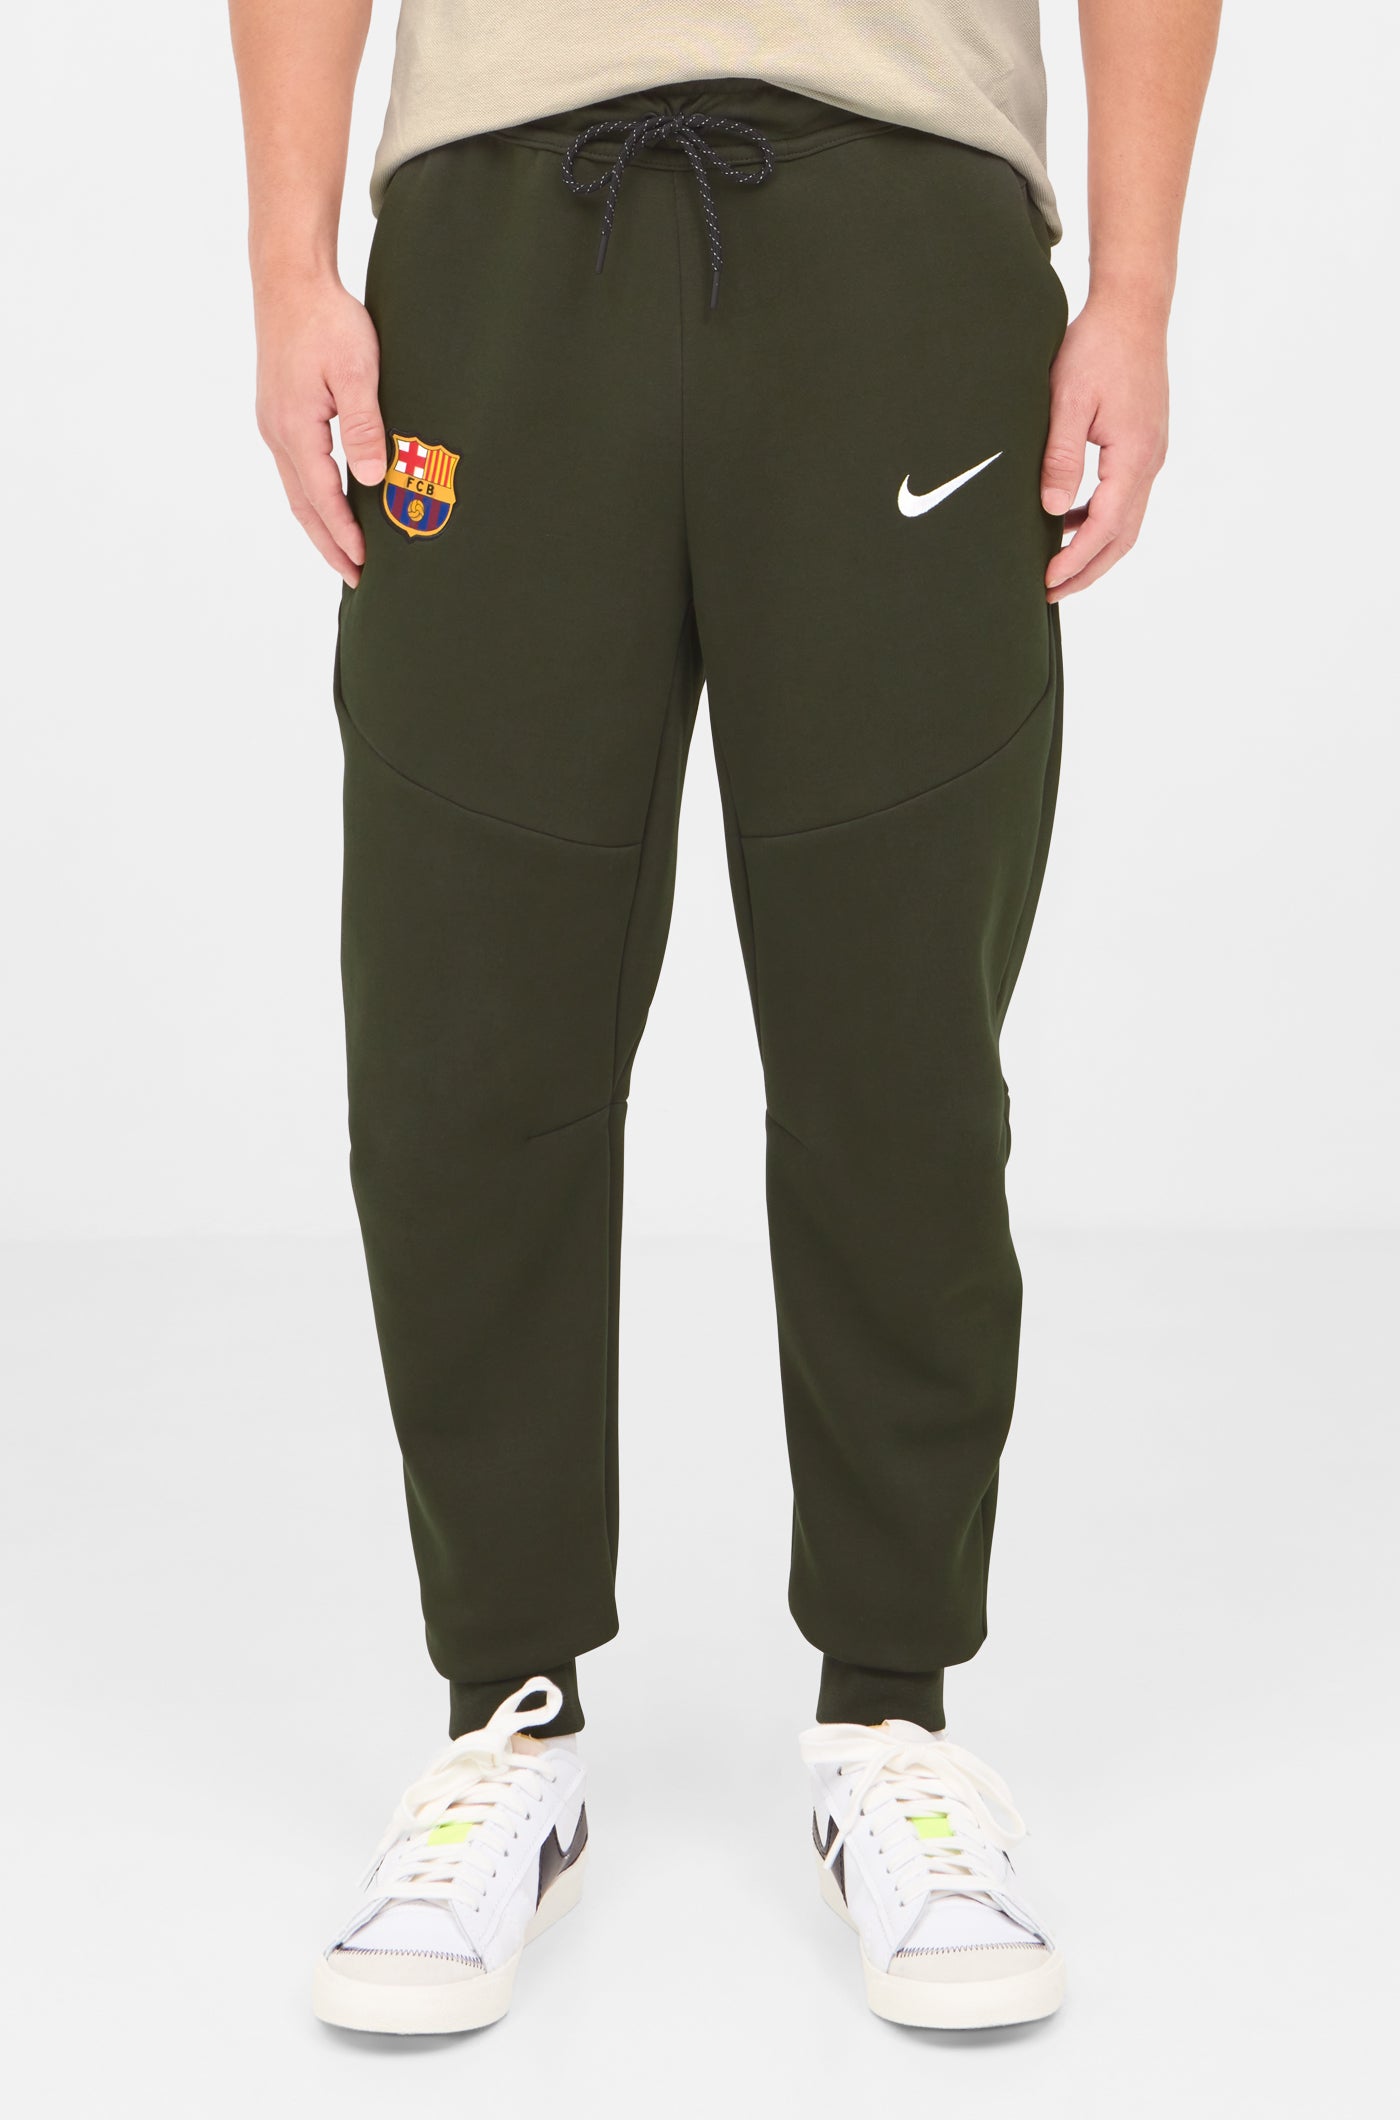 Pantalon vert Barça Nike